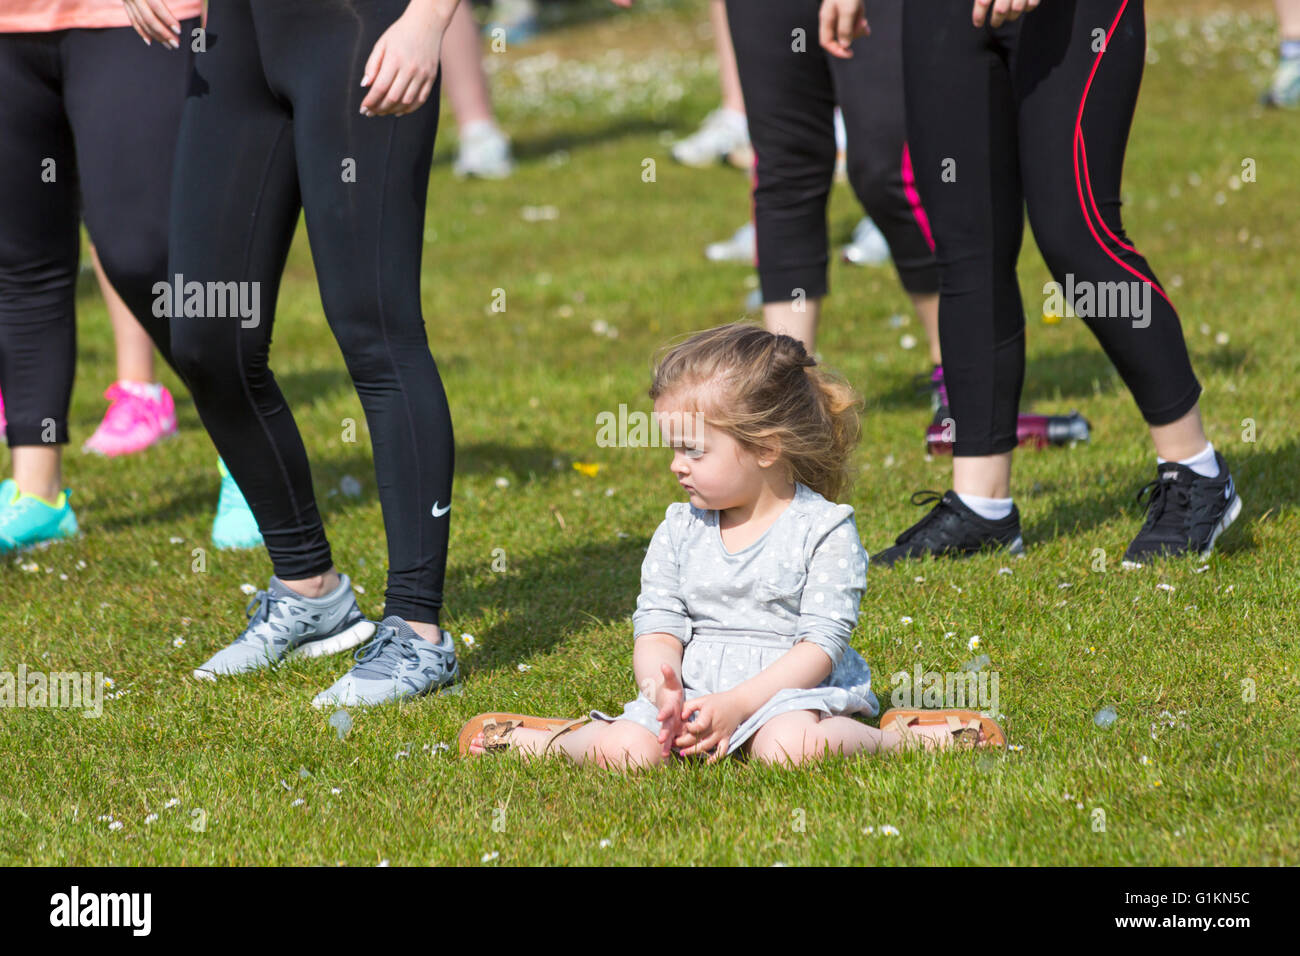 Jeune fille assise sur l'herbe tandis que les adultes autour d'elle de faire l'exercice et pour l'événement à Poole Banque D'Images